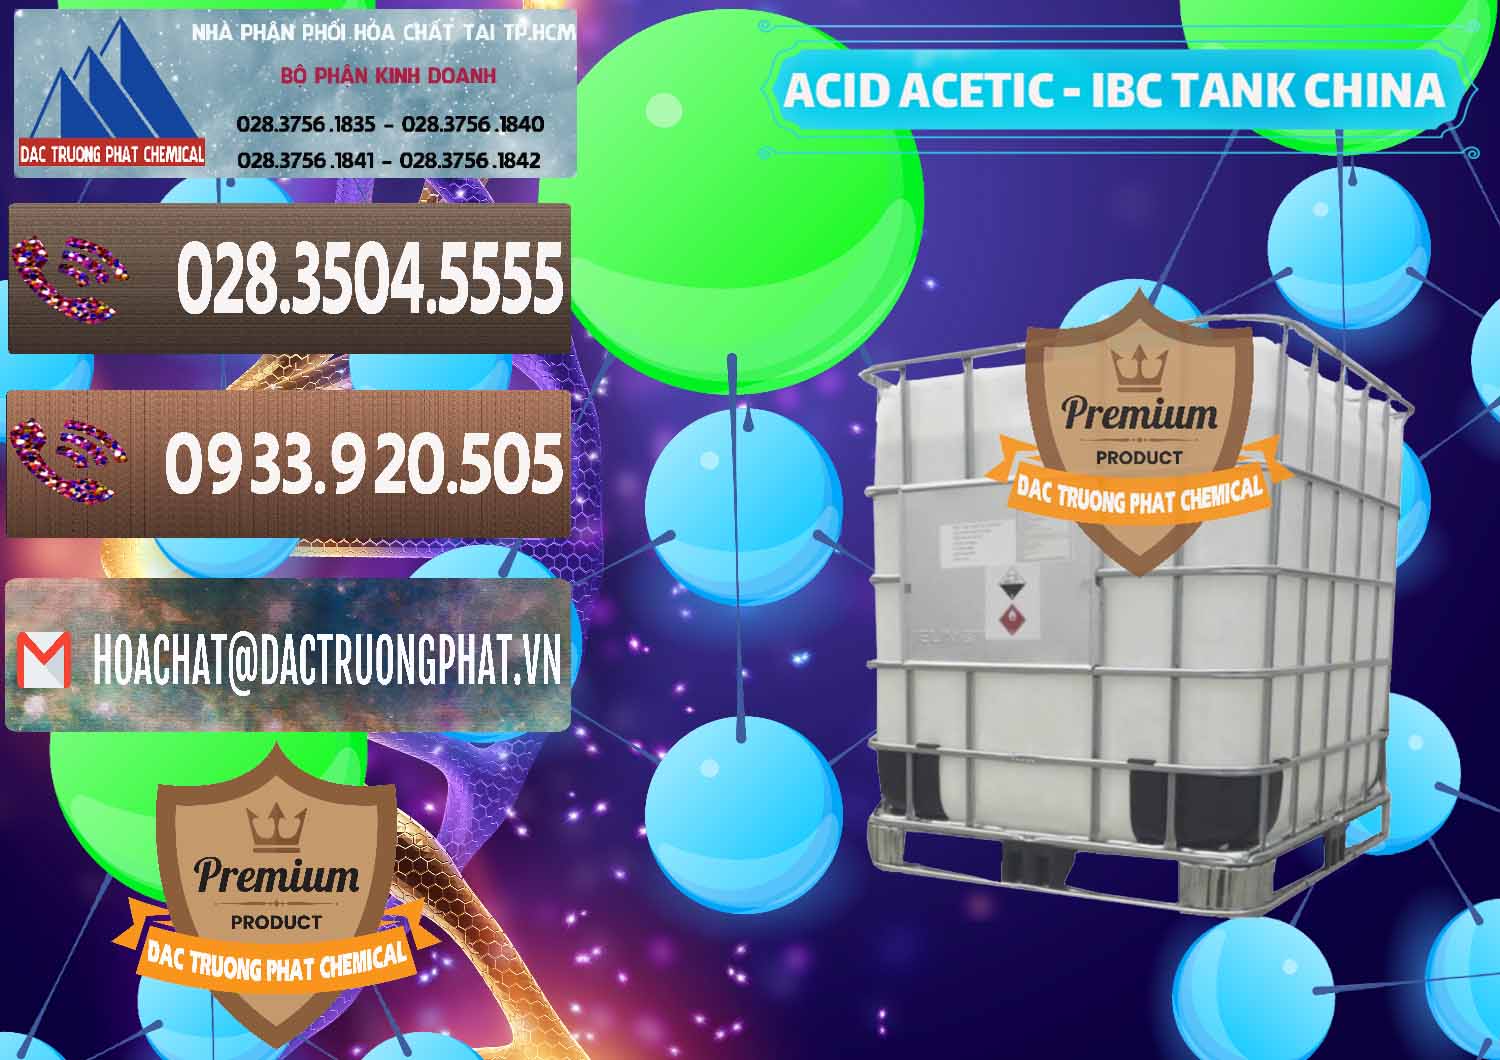 Cty chuyên bán & cung cấp Acetic Acid – Axit Acetic Tank Bồn IBC Trung Quốc China - 0443 - Công ty phân phối ( cung ứng ) hóa chất tại TP.HCM - hoachatviet.net